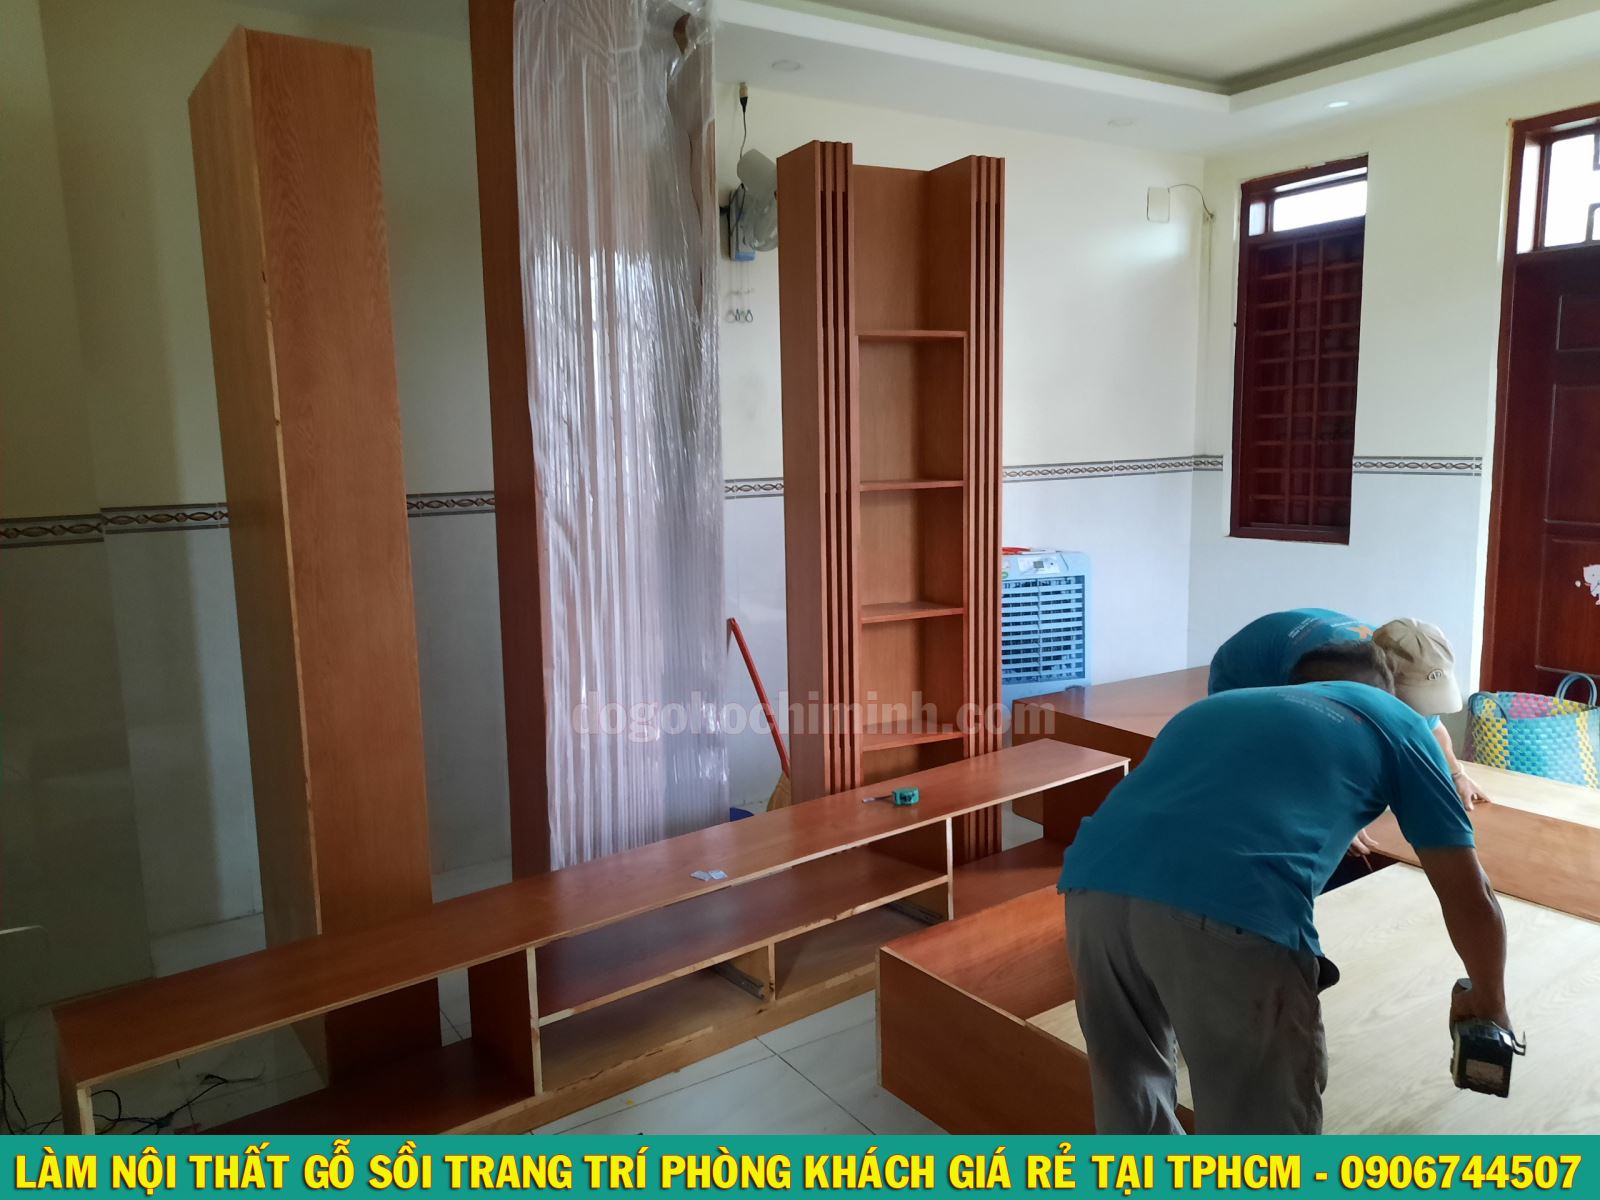 Thi công nội thất gỗ sồi giá rẻ tại nhà Chị Linh - Thủ Đức TPHCM 2020